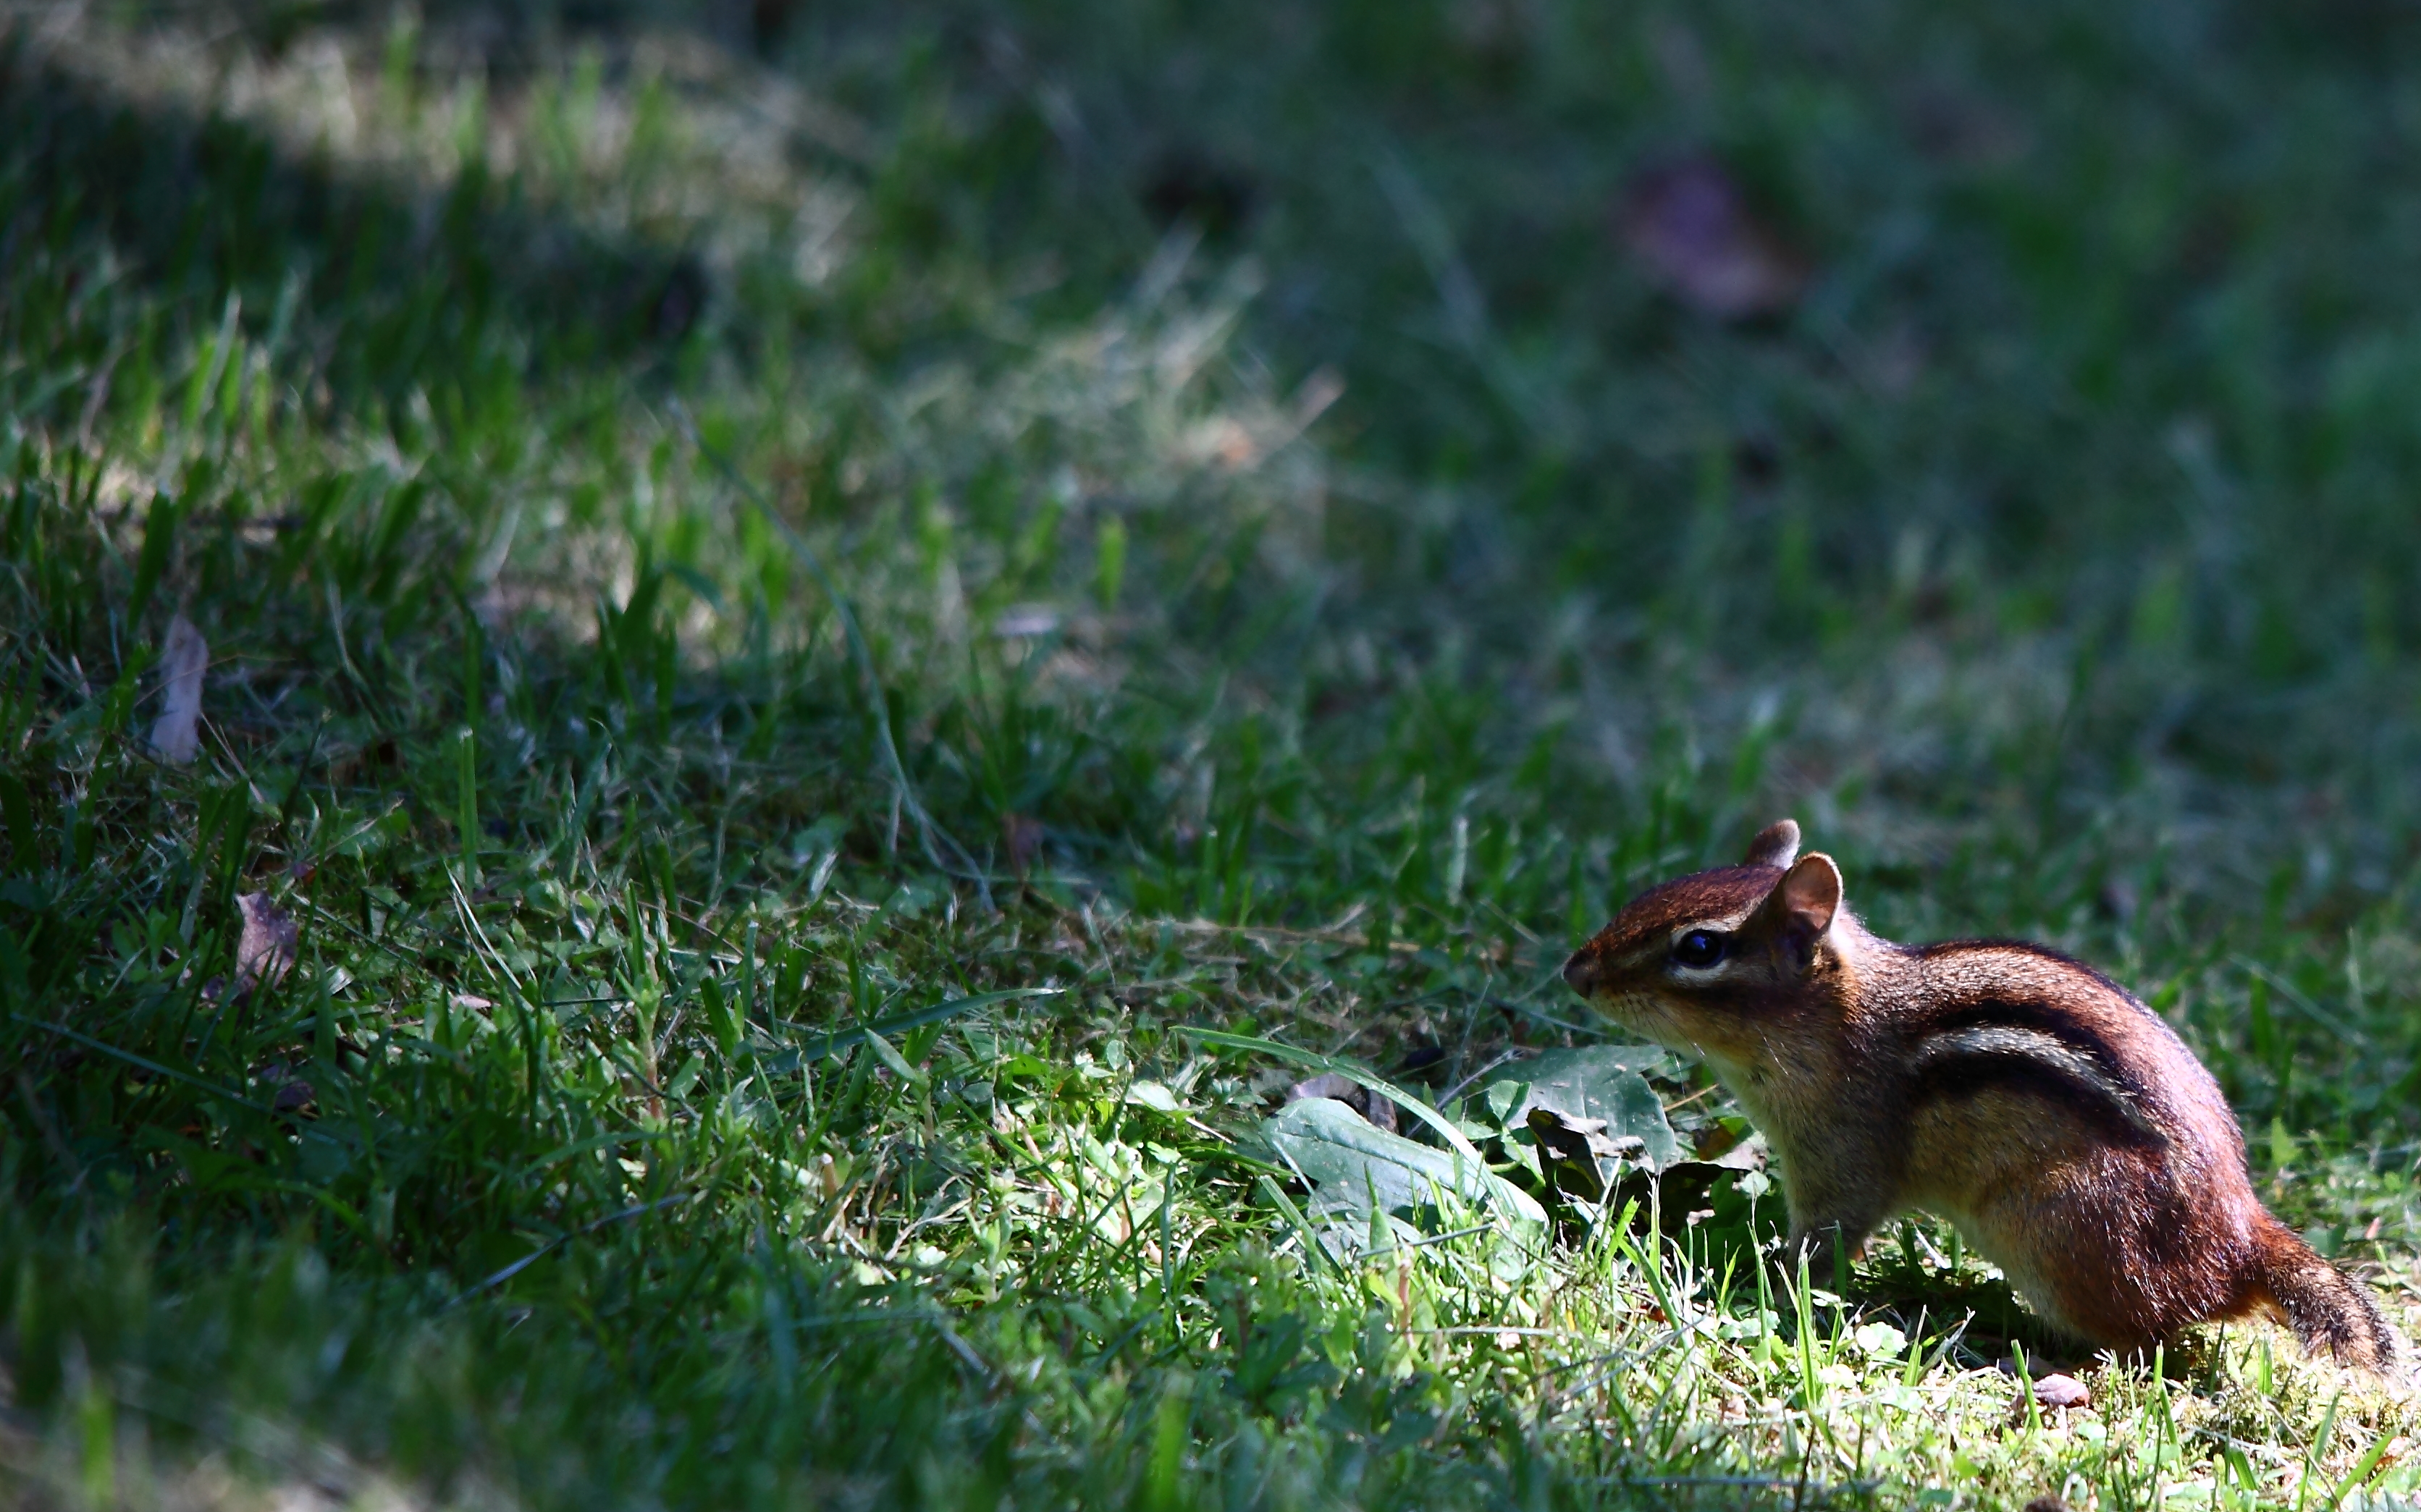 'Chipmunk-in-grass-wildlife' by ForestWander